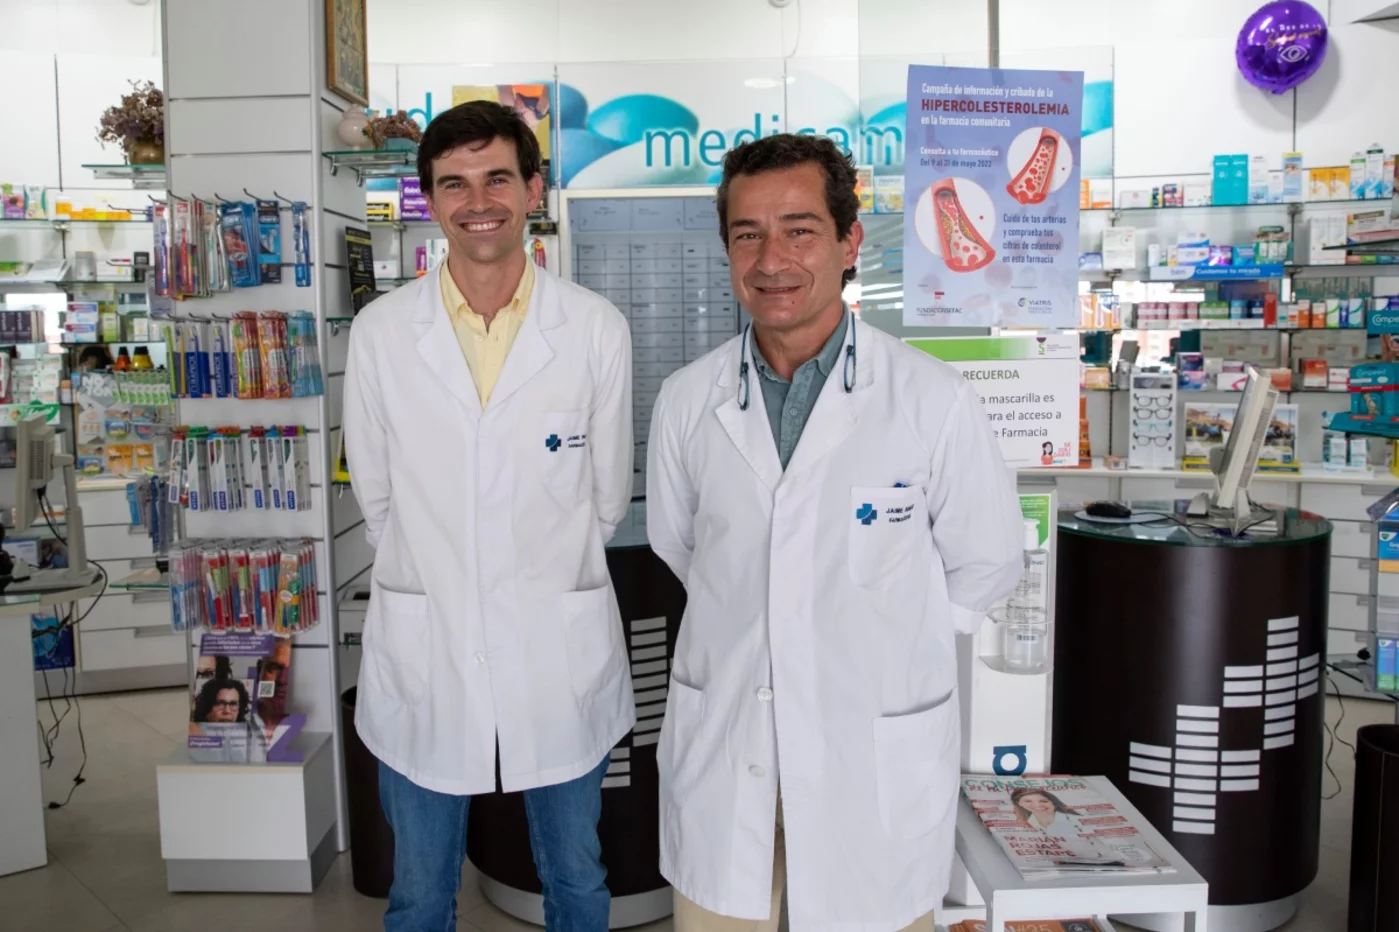 Jaime Román Alvarado, farmacéutico comunitario en Sevilla y miembro del Grupo de Diabetes de Sefac, y Pablo Morell Gutiérrez, farmacéutico comunitario en Sevilla.  Foto y vídeo: SERGIO GONZÁLEZ VALERO.